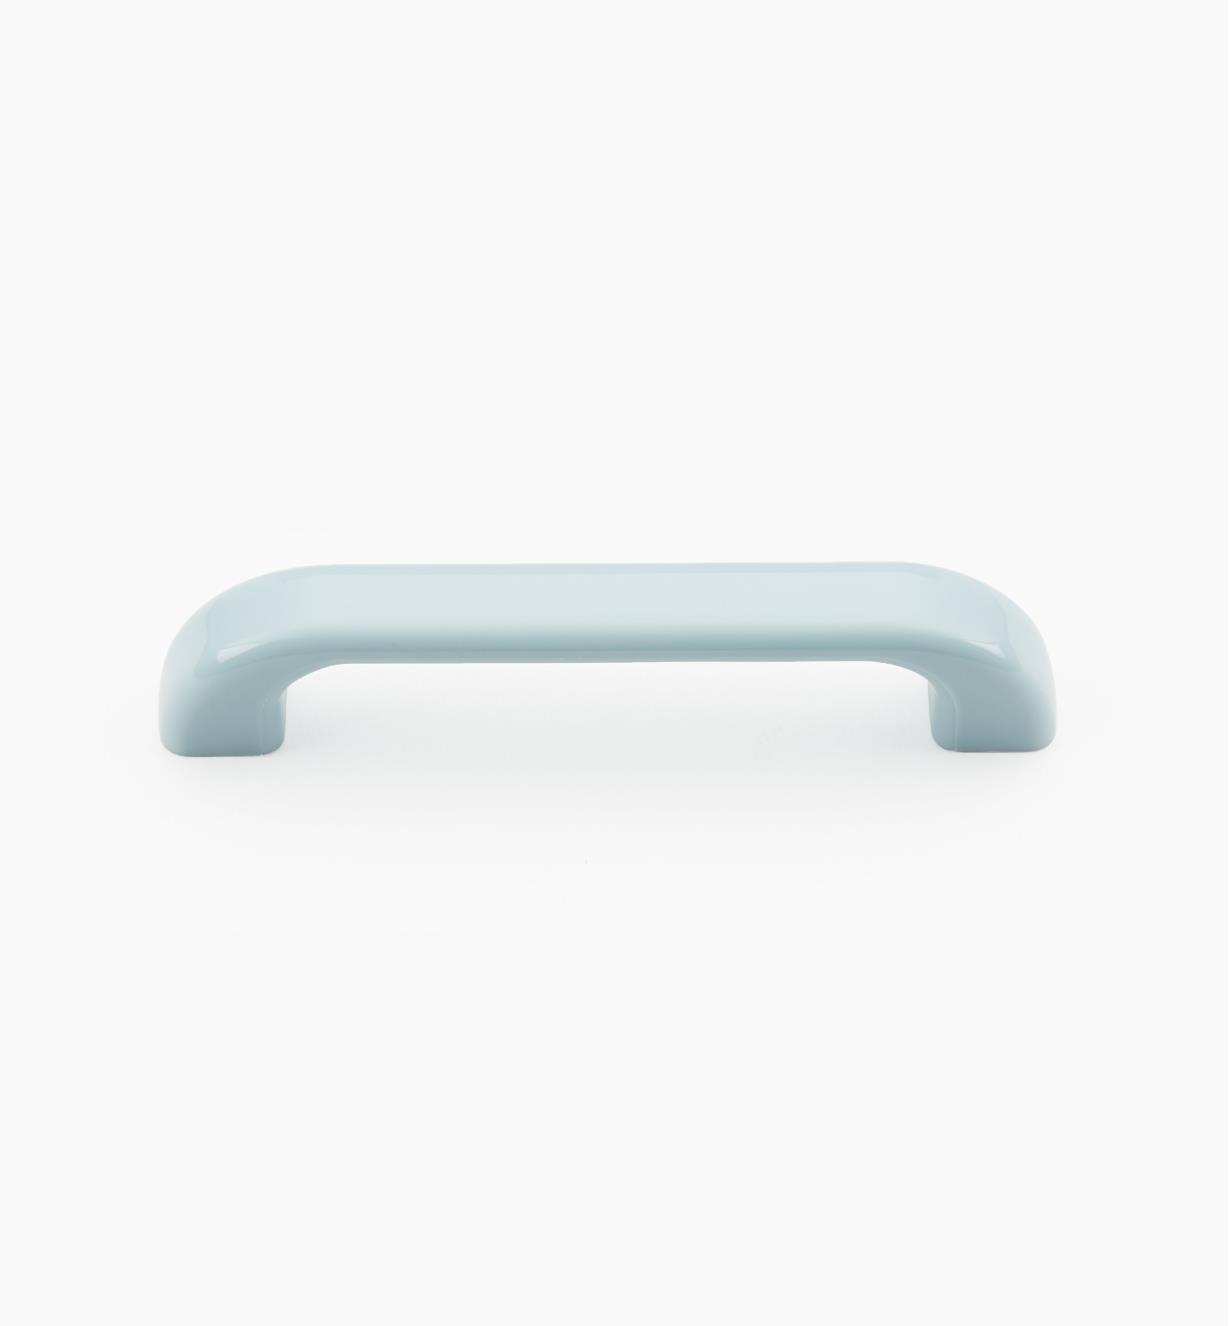 00W3612 - Poignée-fil ovale  en plastique, bleu clair, 4 5/8 po